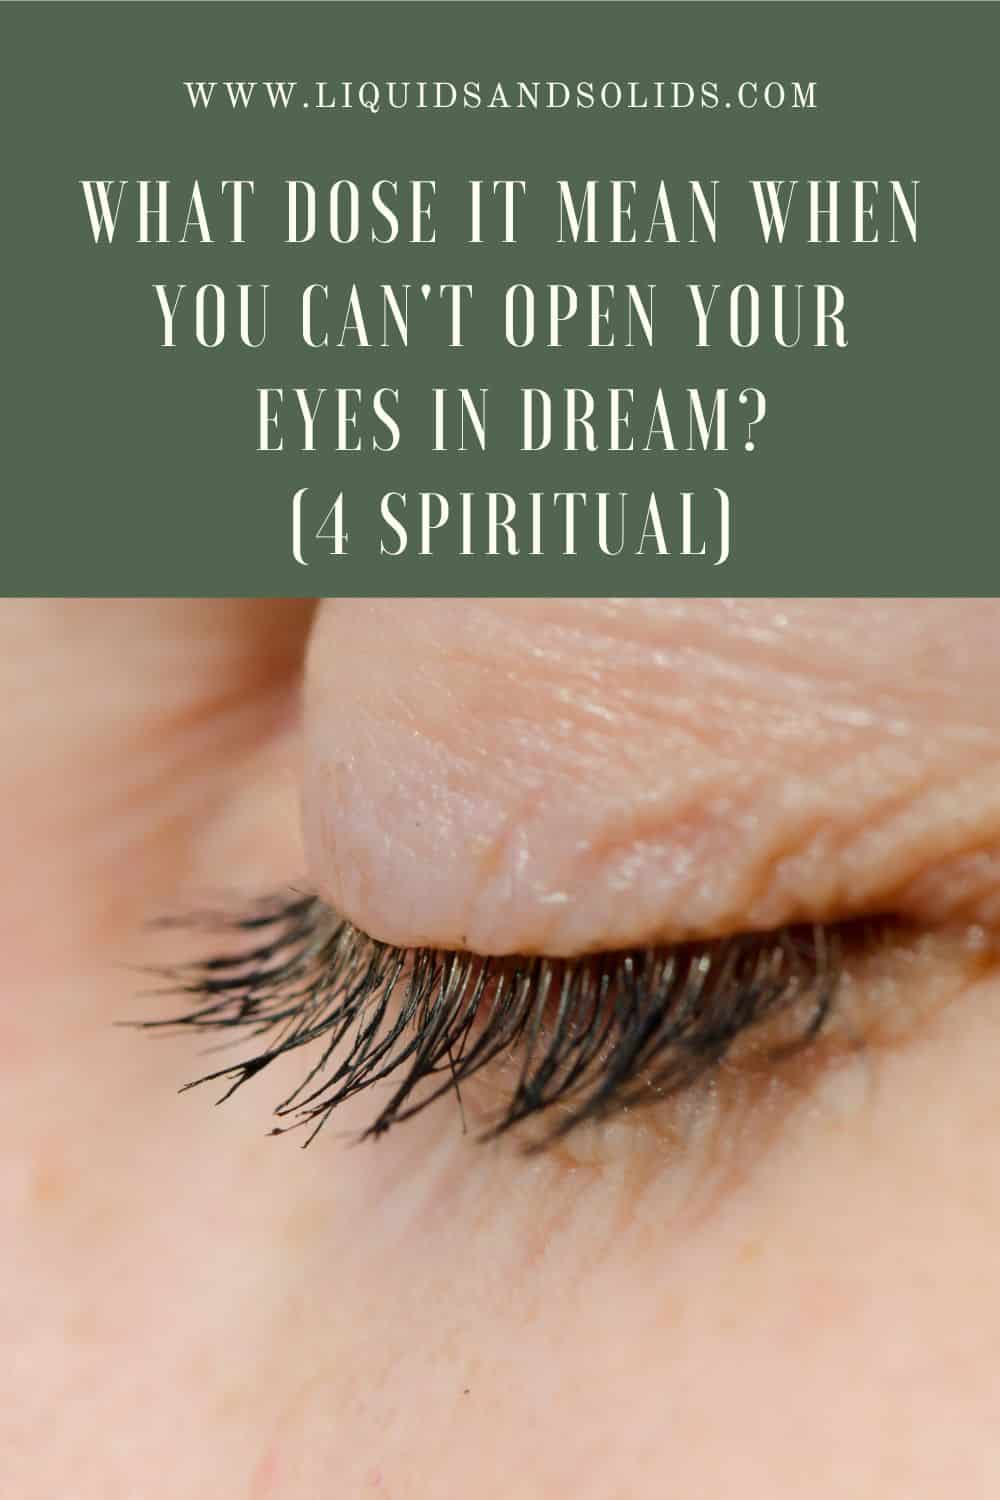  Nem tudja kinyitni a szemét álmában (4 spirituális jelentés)